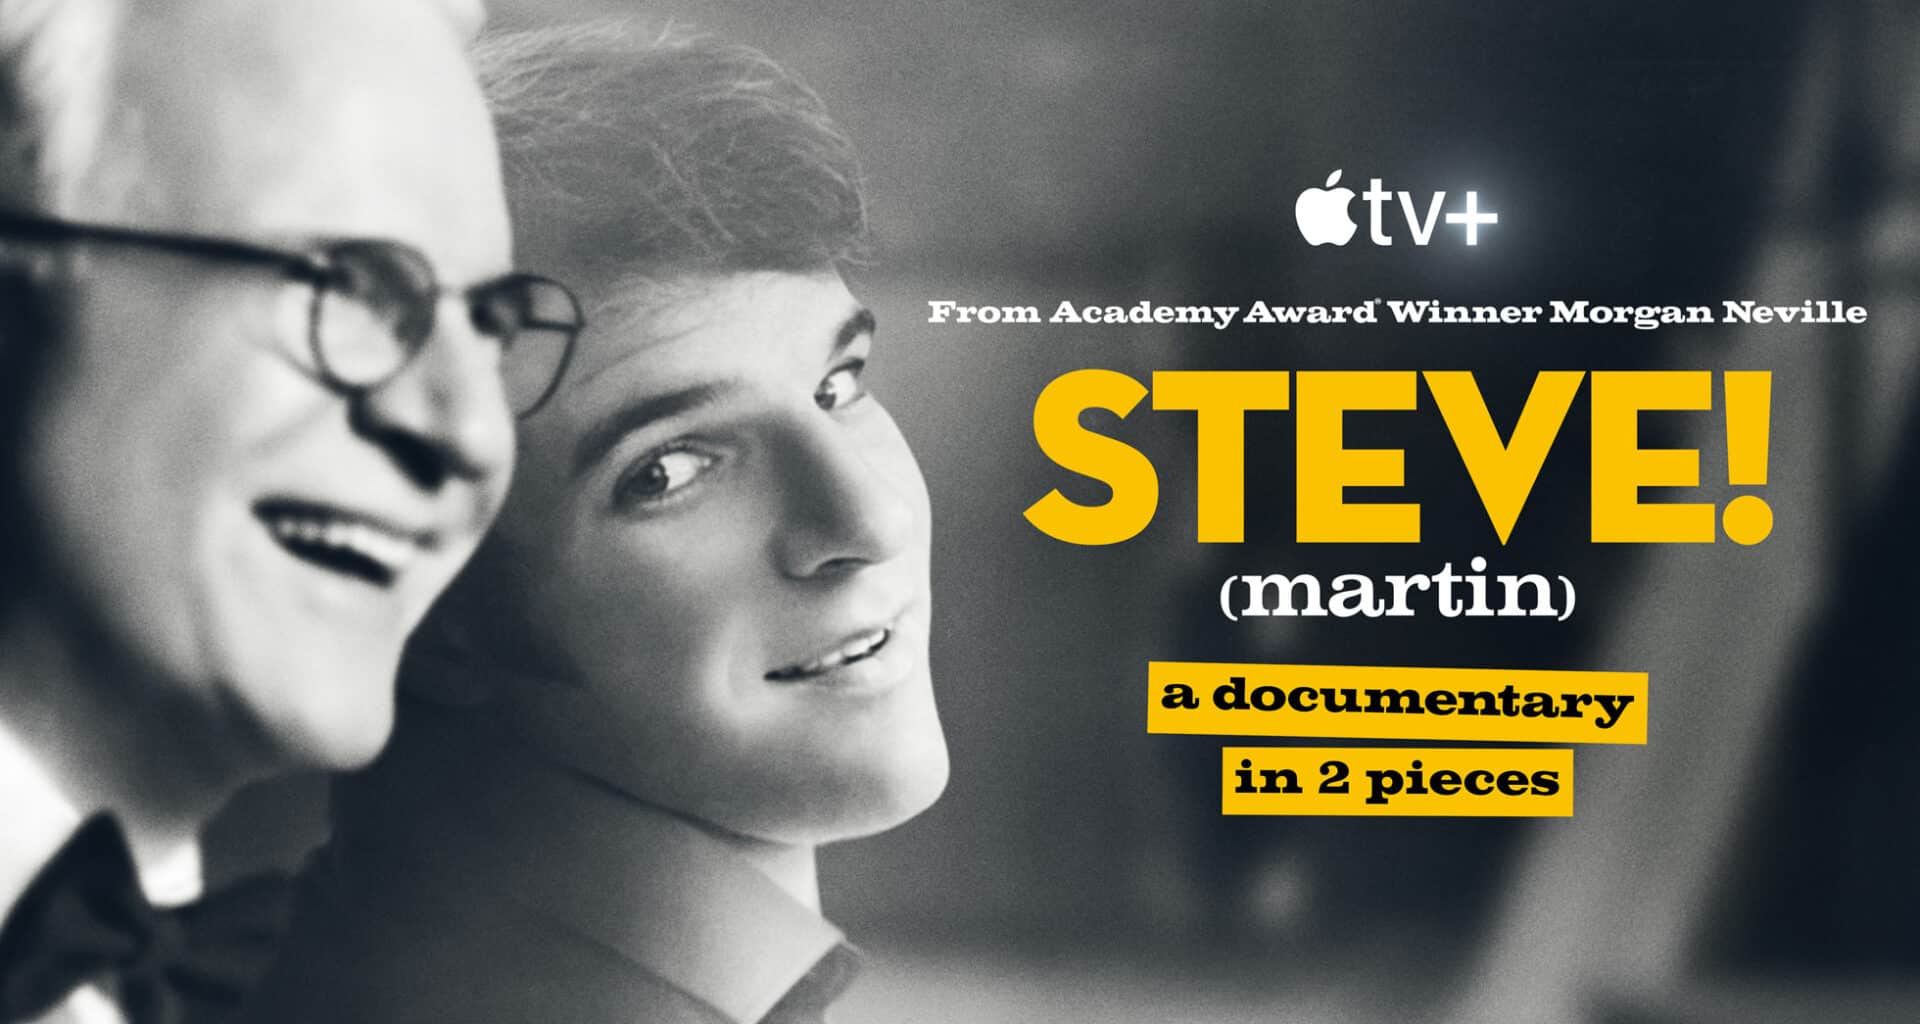 "Steve! (martin): documentário em 2 partes"